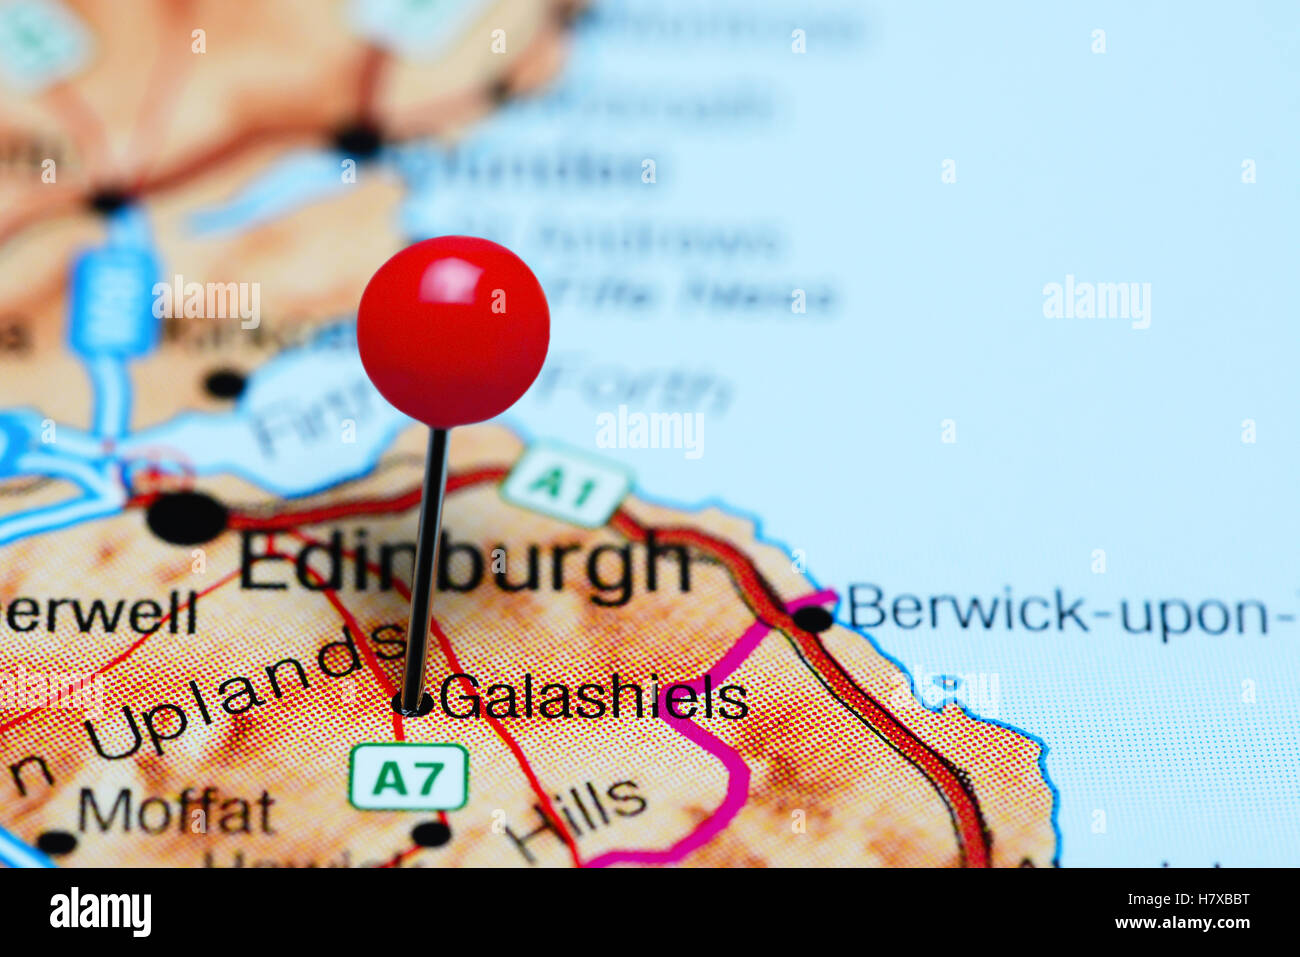 Galashiels épinglée sur une carte d'Écosse Banque D'Images